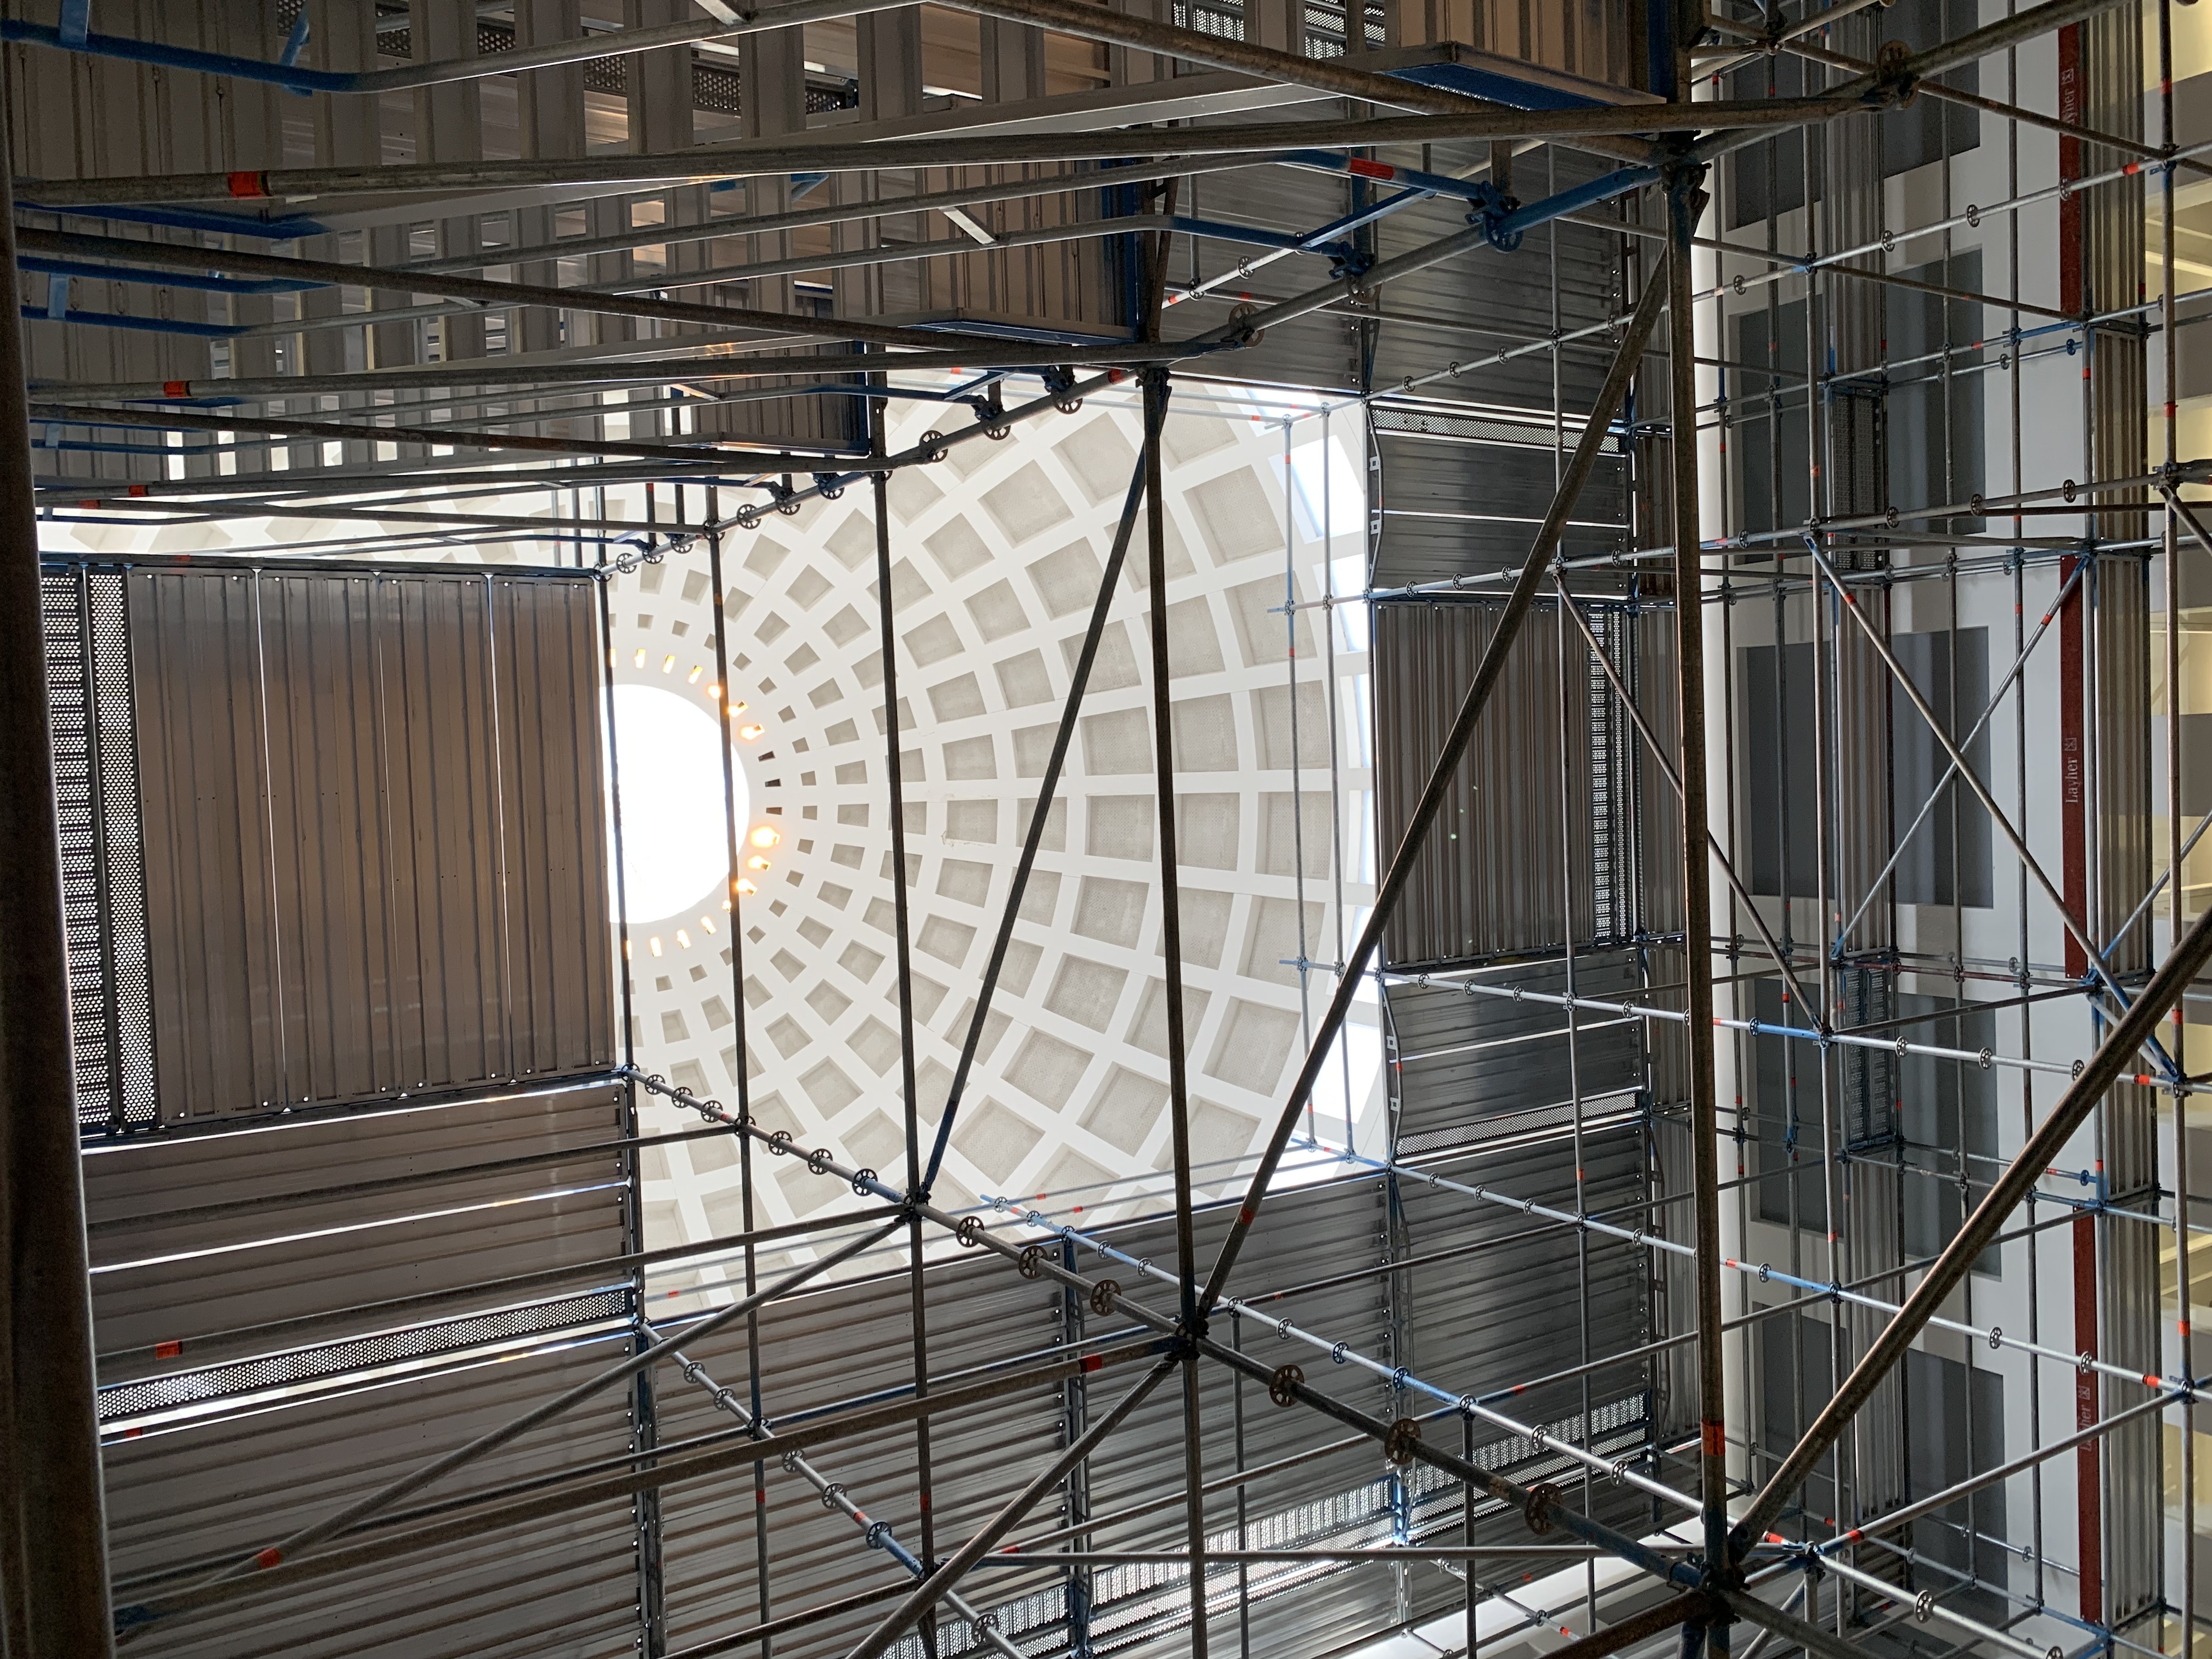 Das Bild zeigt das vollständig aufgebaute Baugerüst im Lesesaal der Badischen Landesbibliothek.